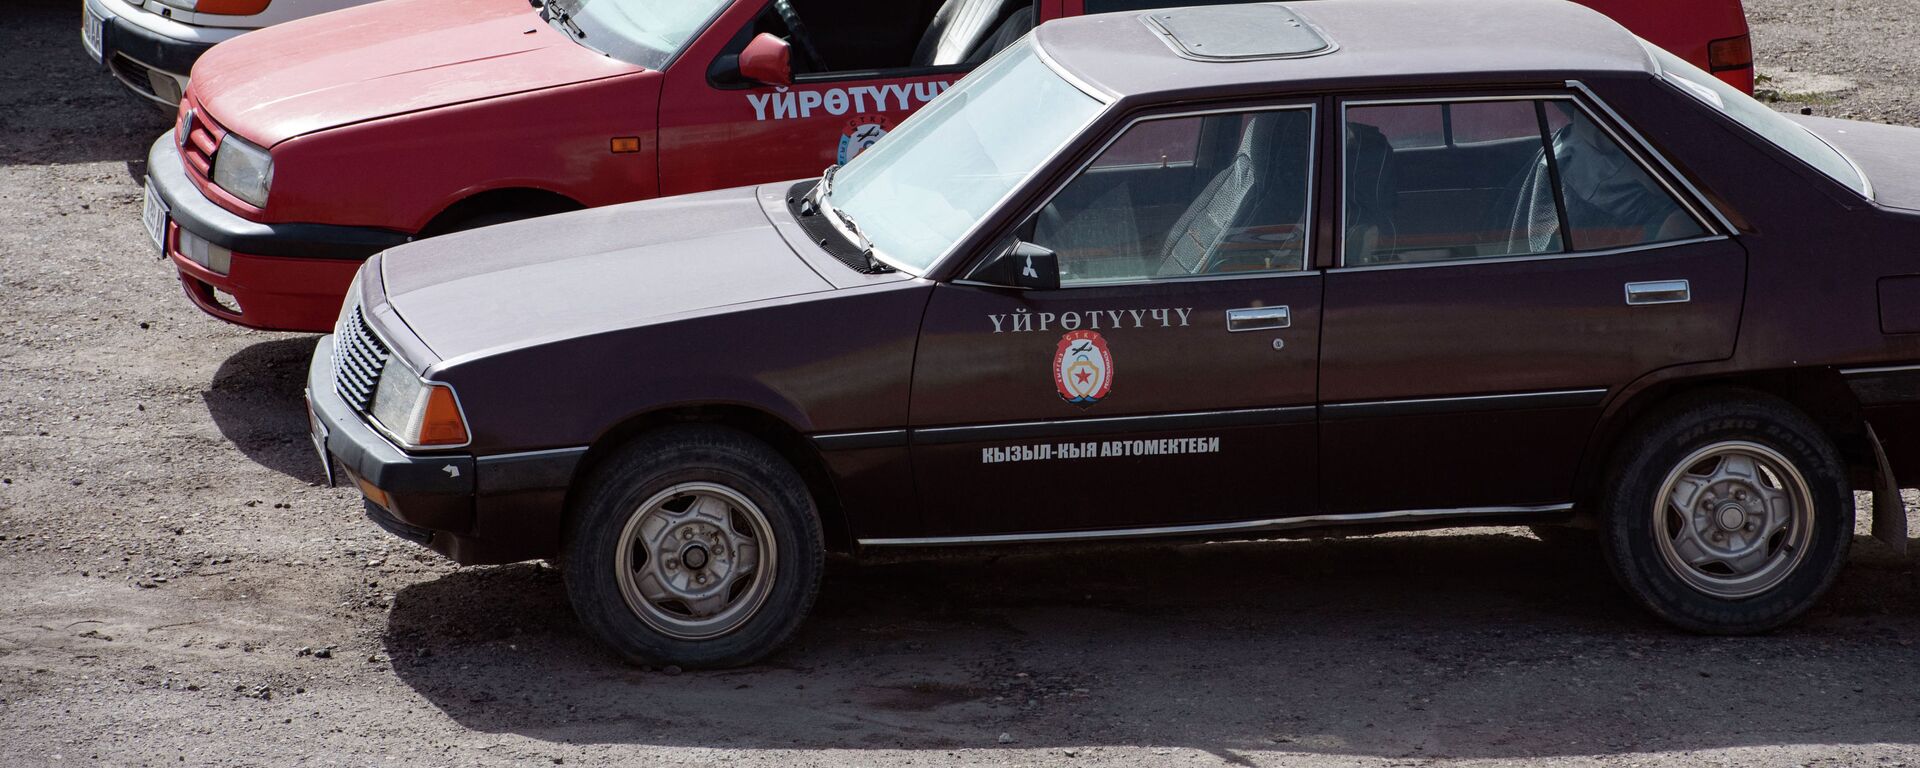 Автомобили для обучения вождению в одном из автошкол Кыз-ыл-Кии. Архивное фото - Sputnik Кыргызстан, 1920, 01.01.2022